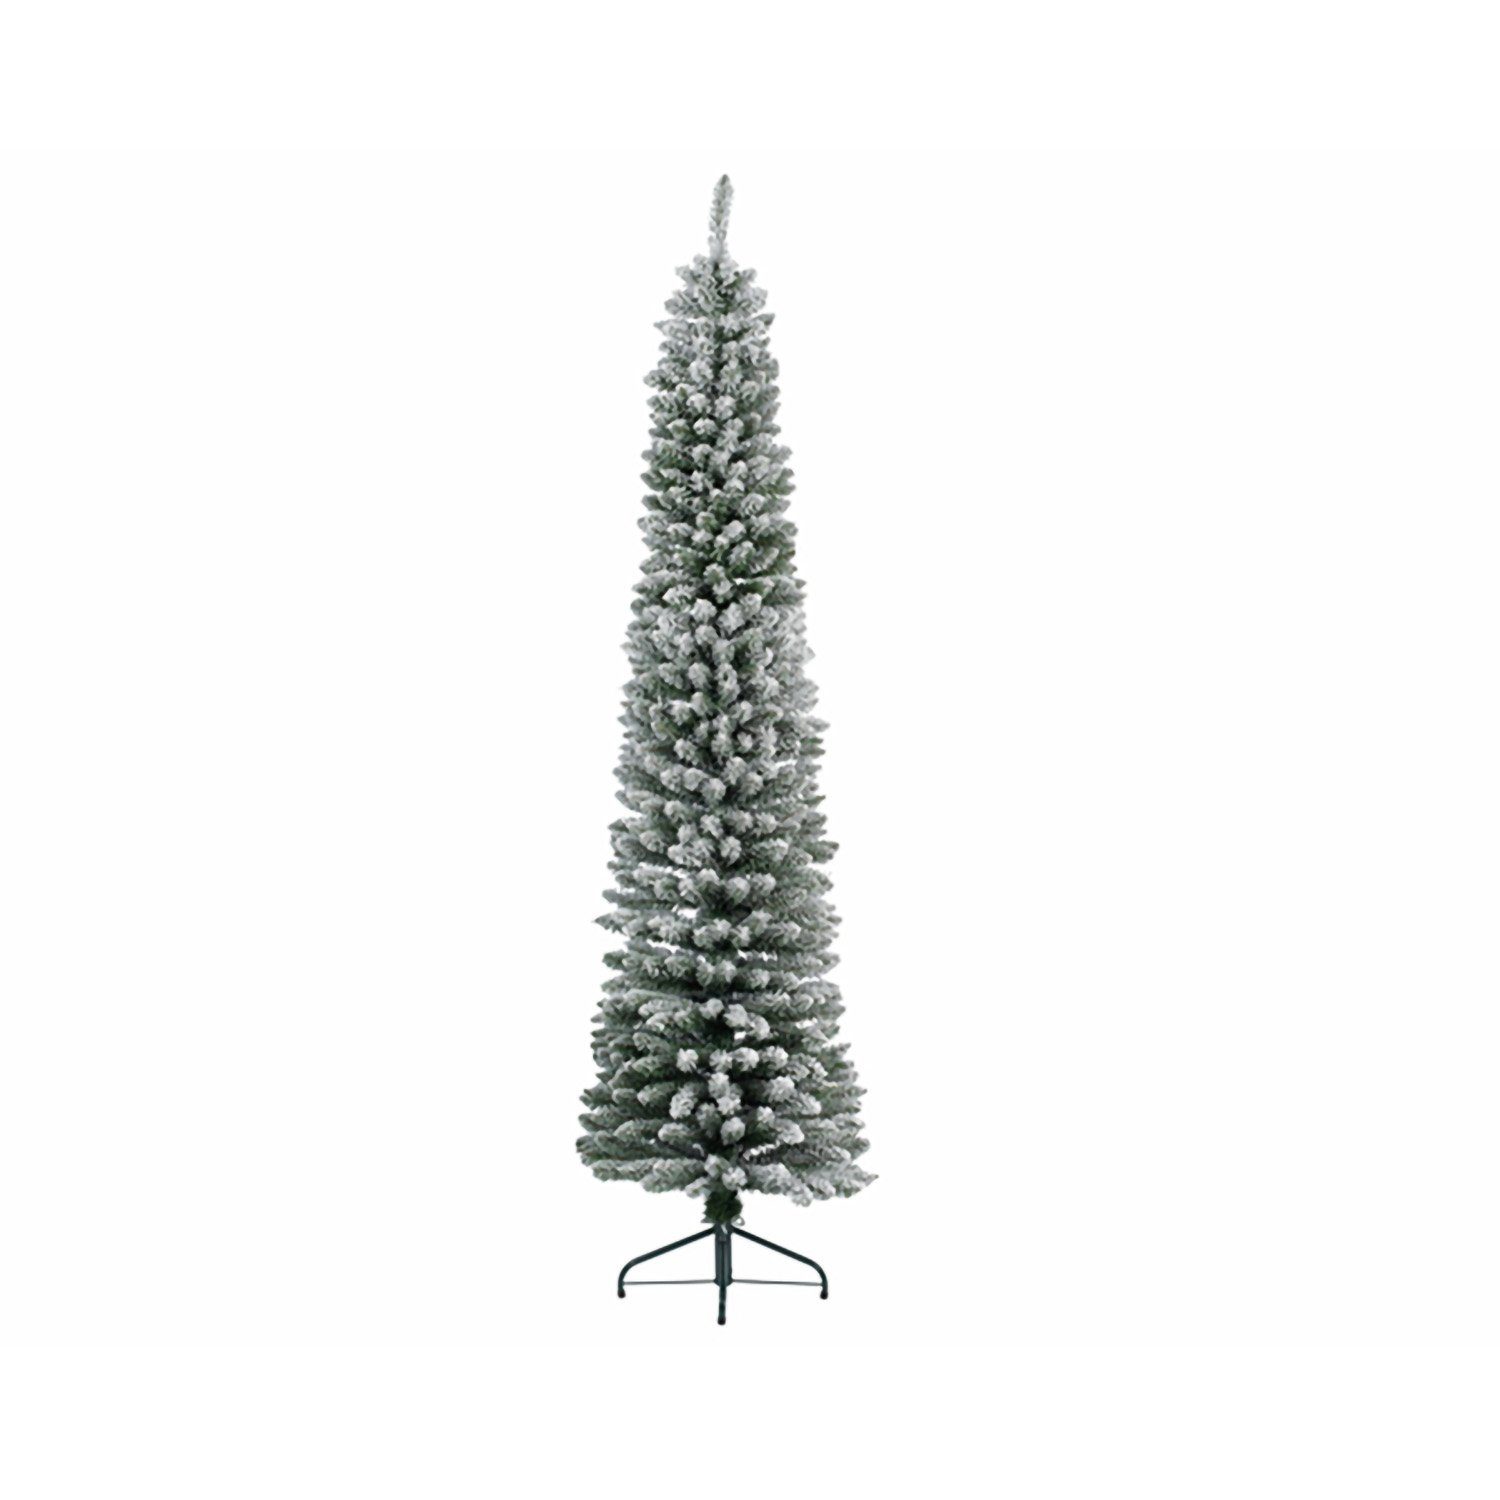 H. Tannenbaum 240cm Künstlicher Weihnachtsbaum - Deko grün-weiß GILDE D. - beschneit GILDE x 70cm